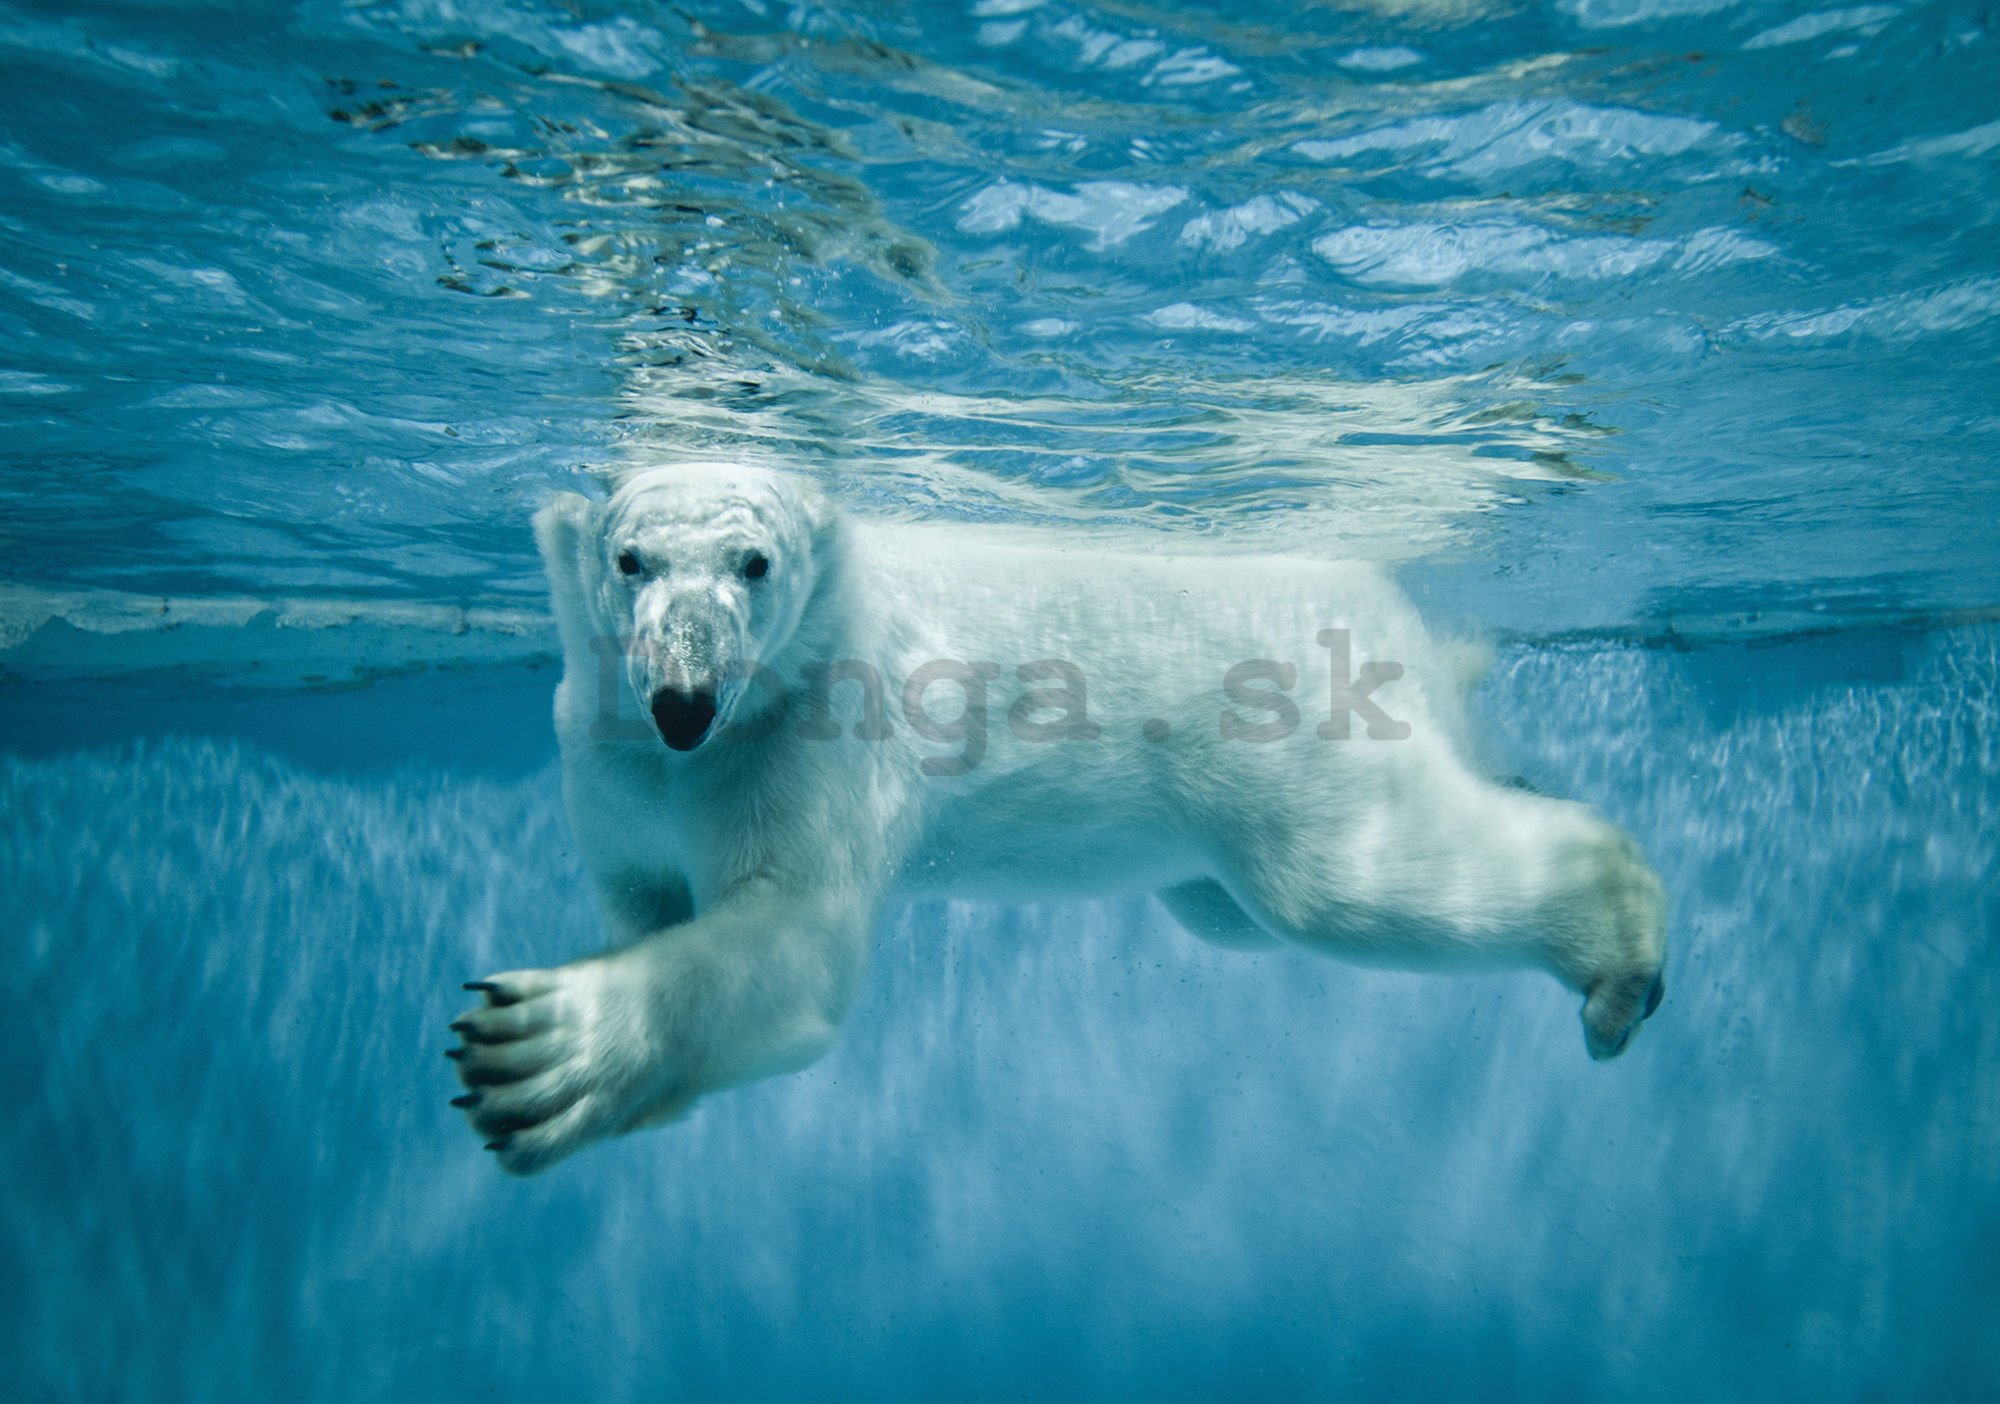 Fototapeta: Polárny medveď (1) - 254x368 cm